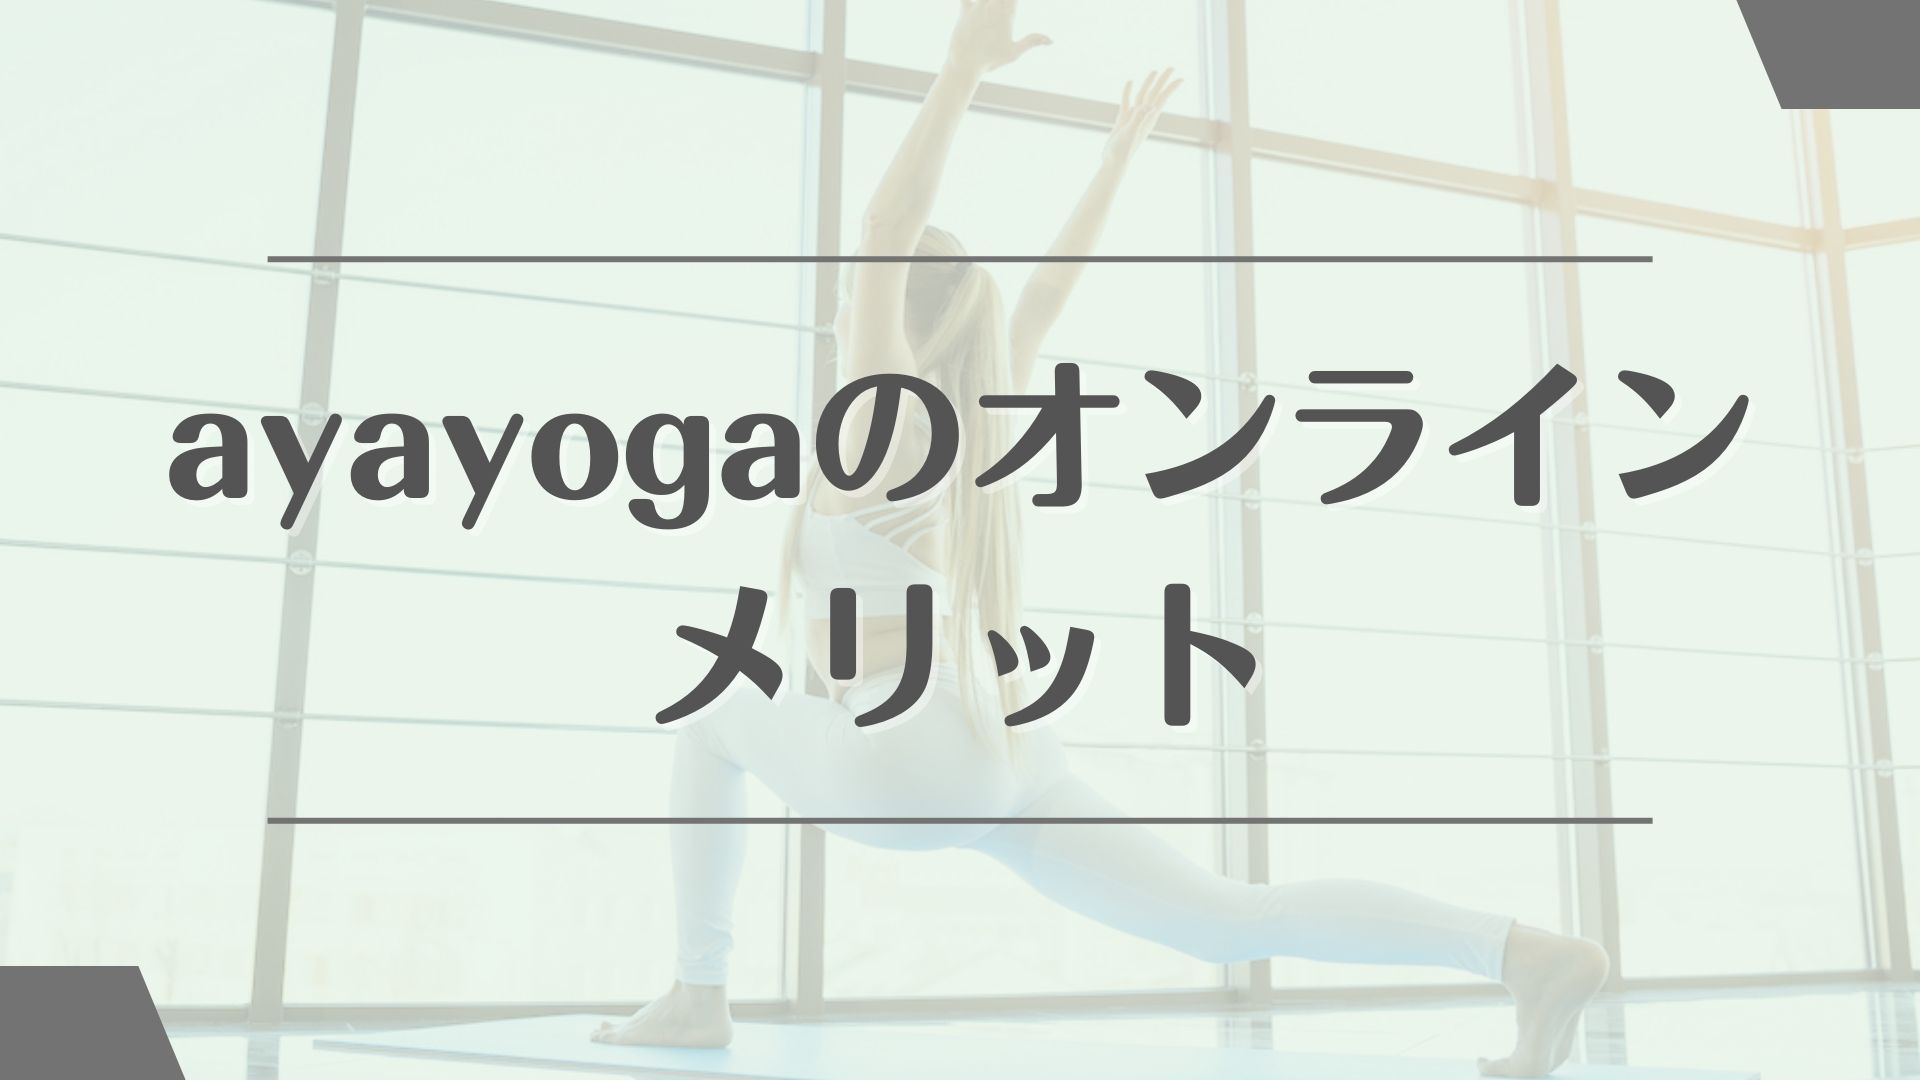 ayayoga(あやヨガ)オンラインのメリット